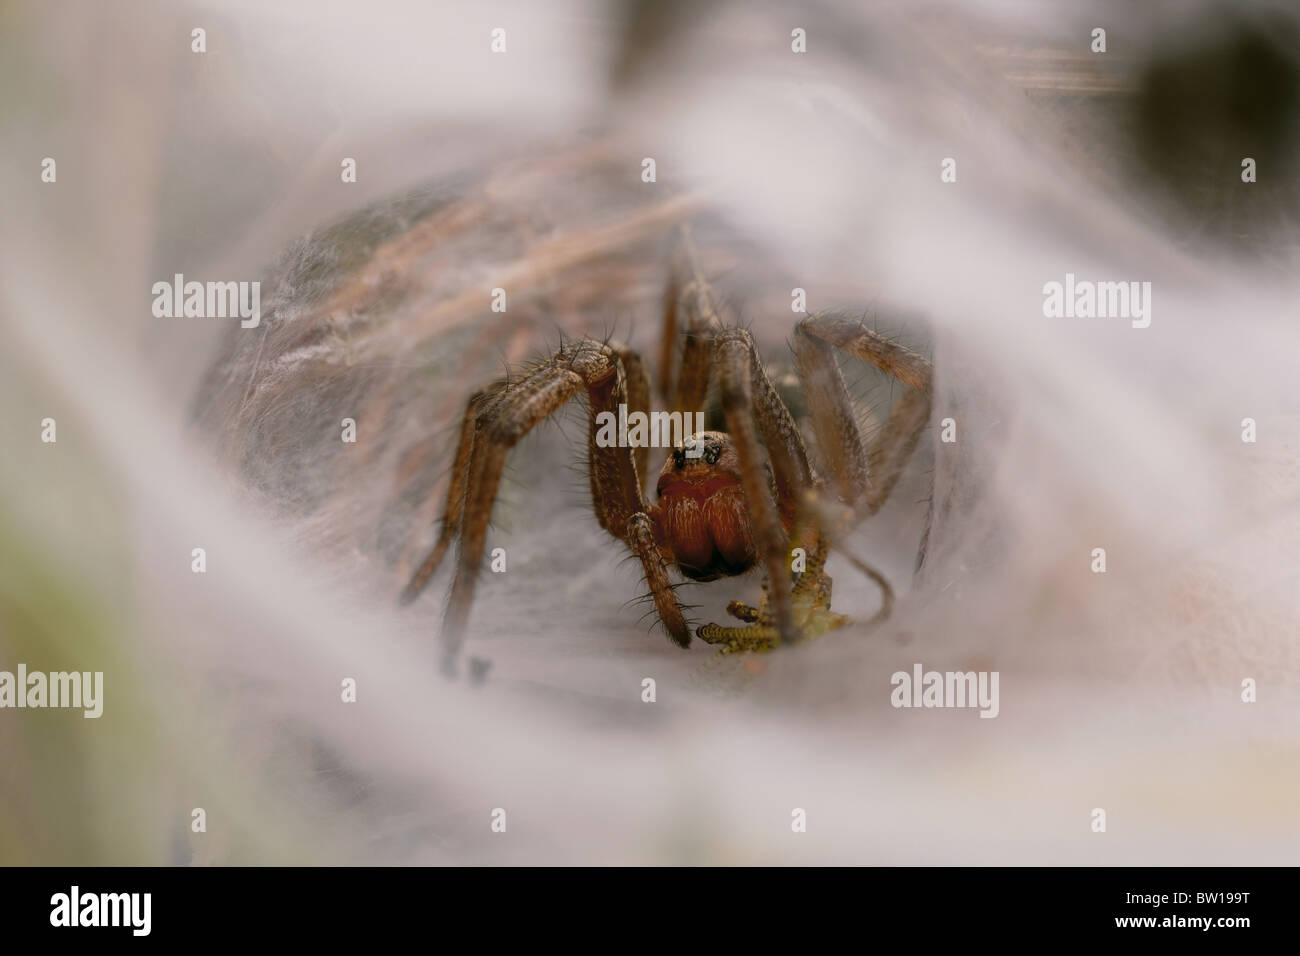 Funnel Web oder Agelenidae Spinne im Netz Trichter mit Beute, Dorset, Großbritannien Stockfoto